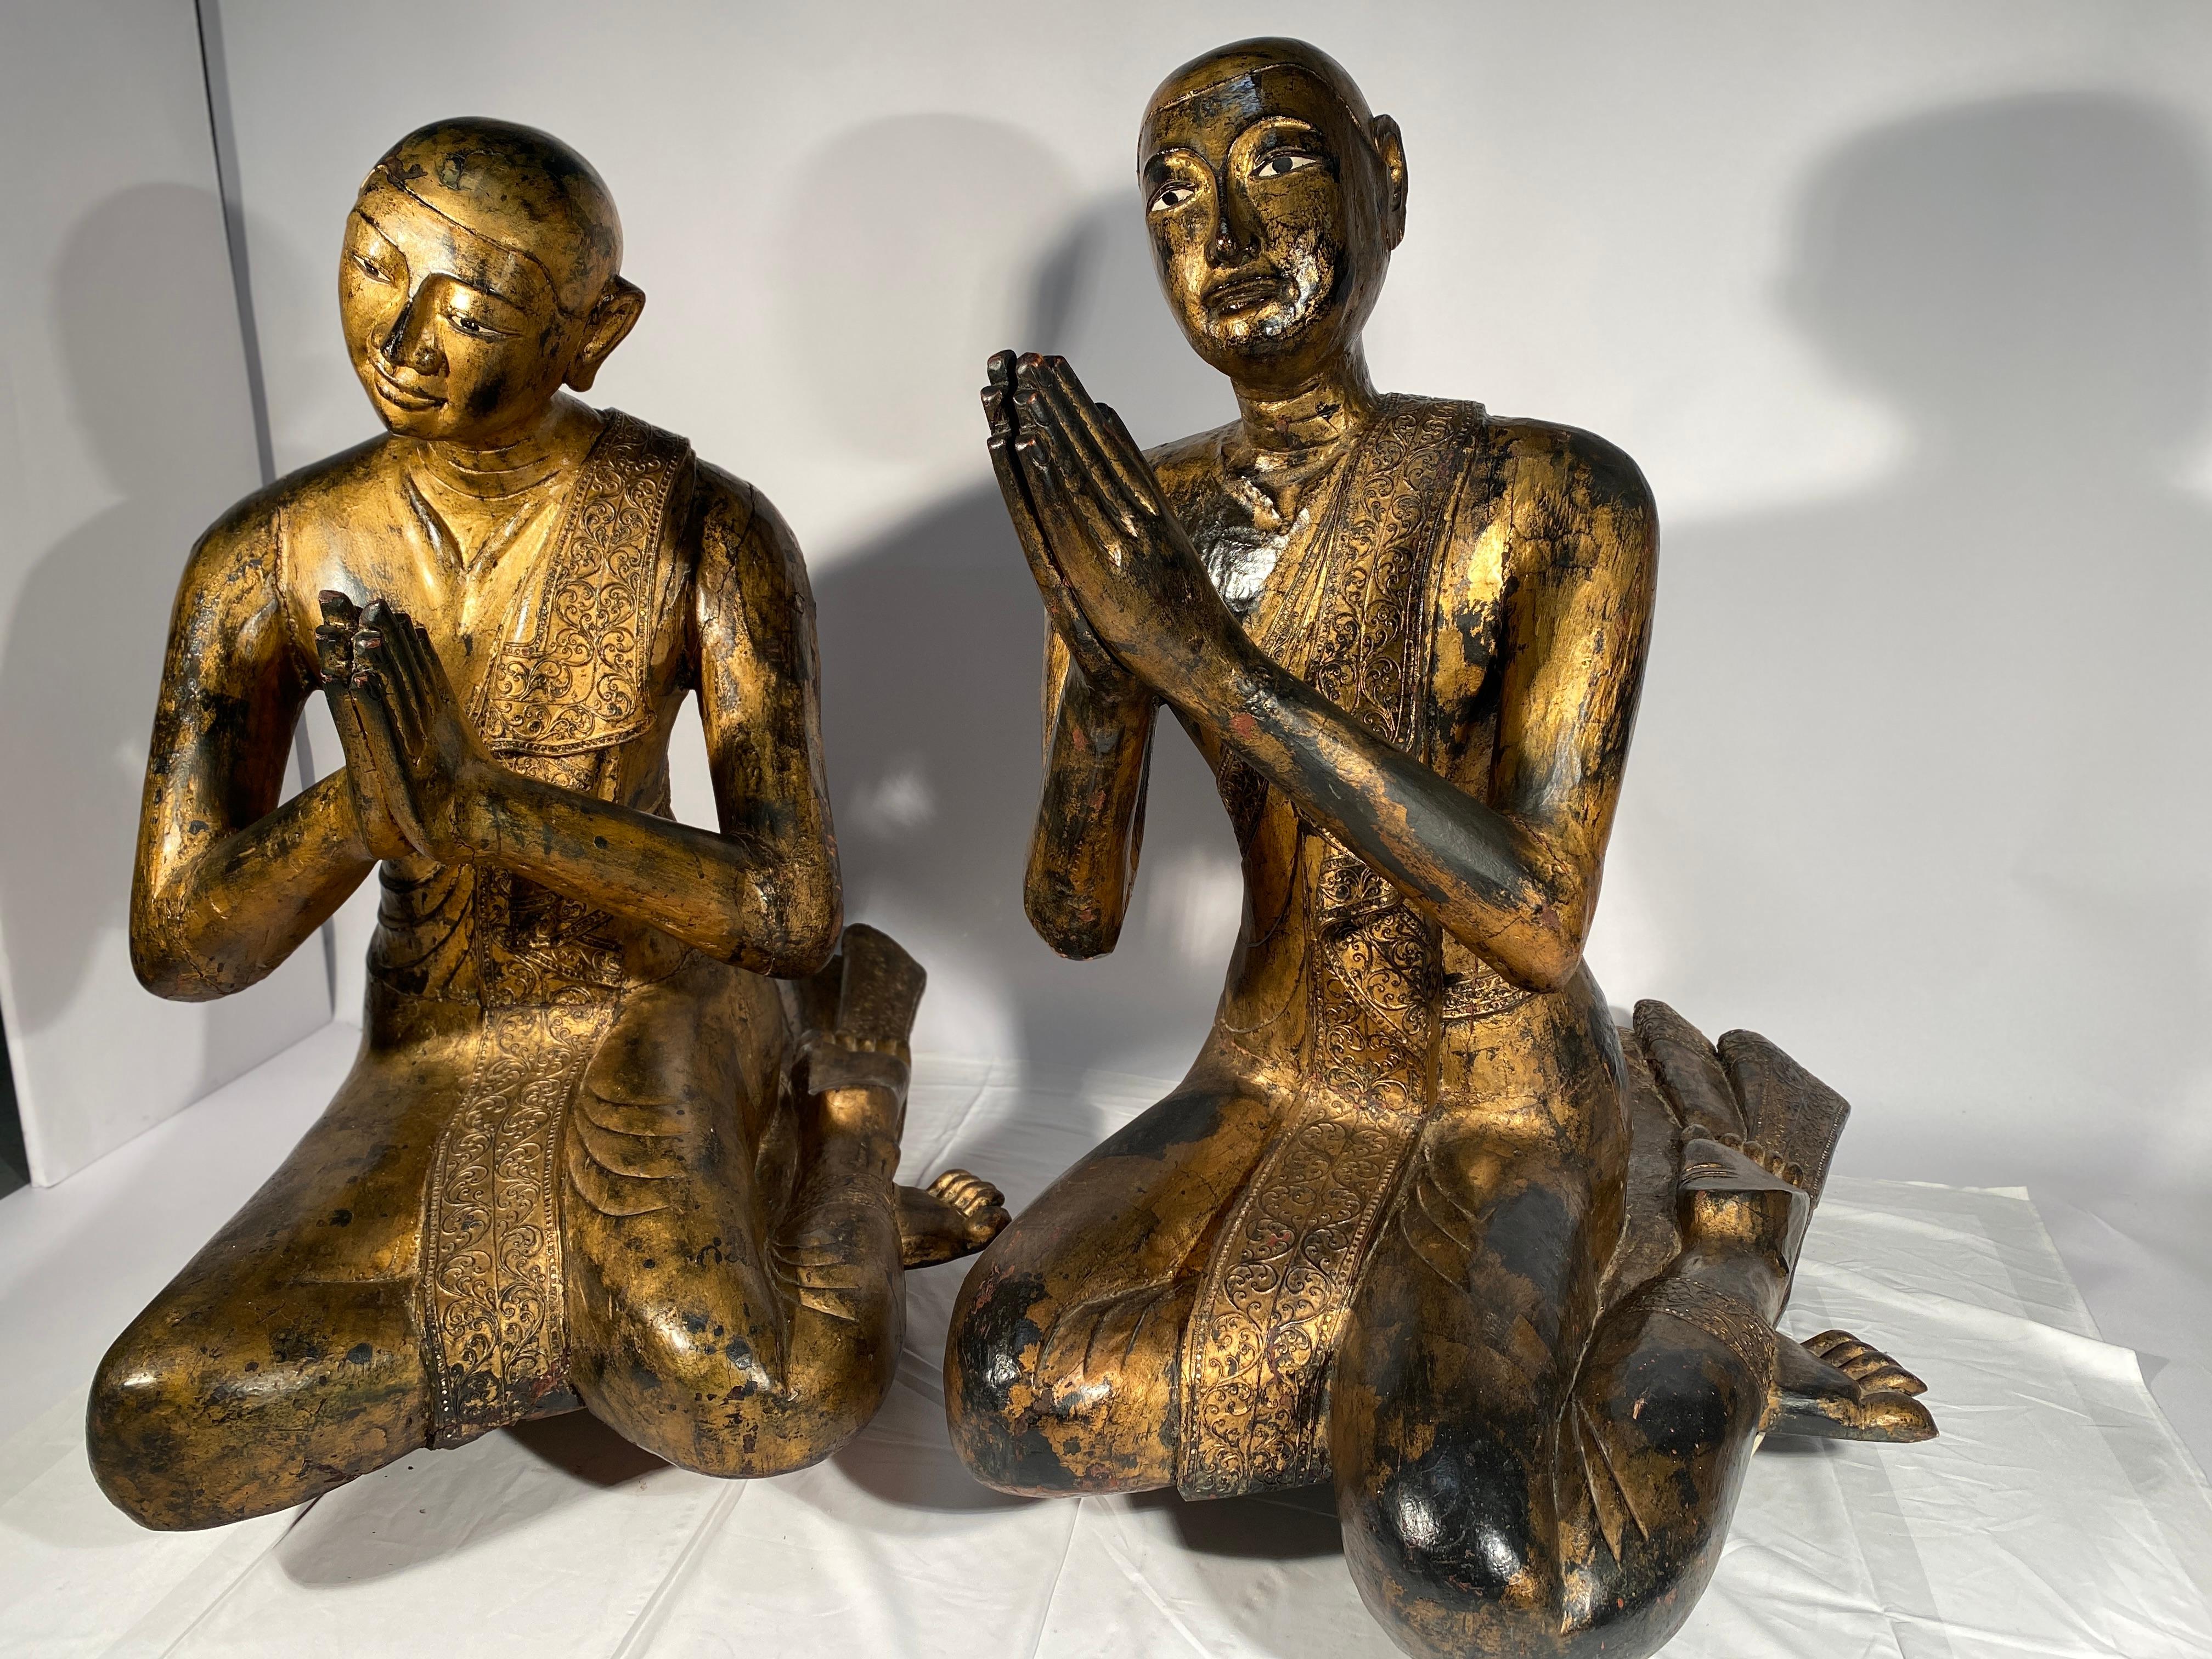 Importante paire de moines priant en bois laqué et doré. Ils sont en pendants, ils ont en effet chacun leur tête légèrement inclinée l'une vers l'autre. Leurs tailles sont exceptionnelles puisqu'ils mesurent respectivement 108 et 114 cm de